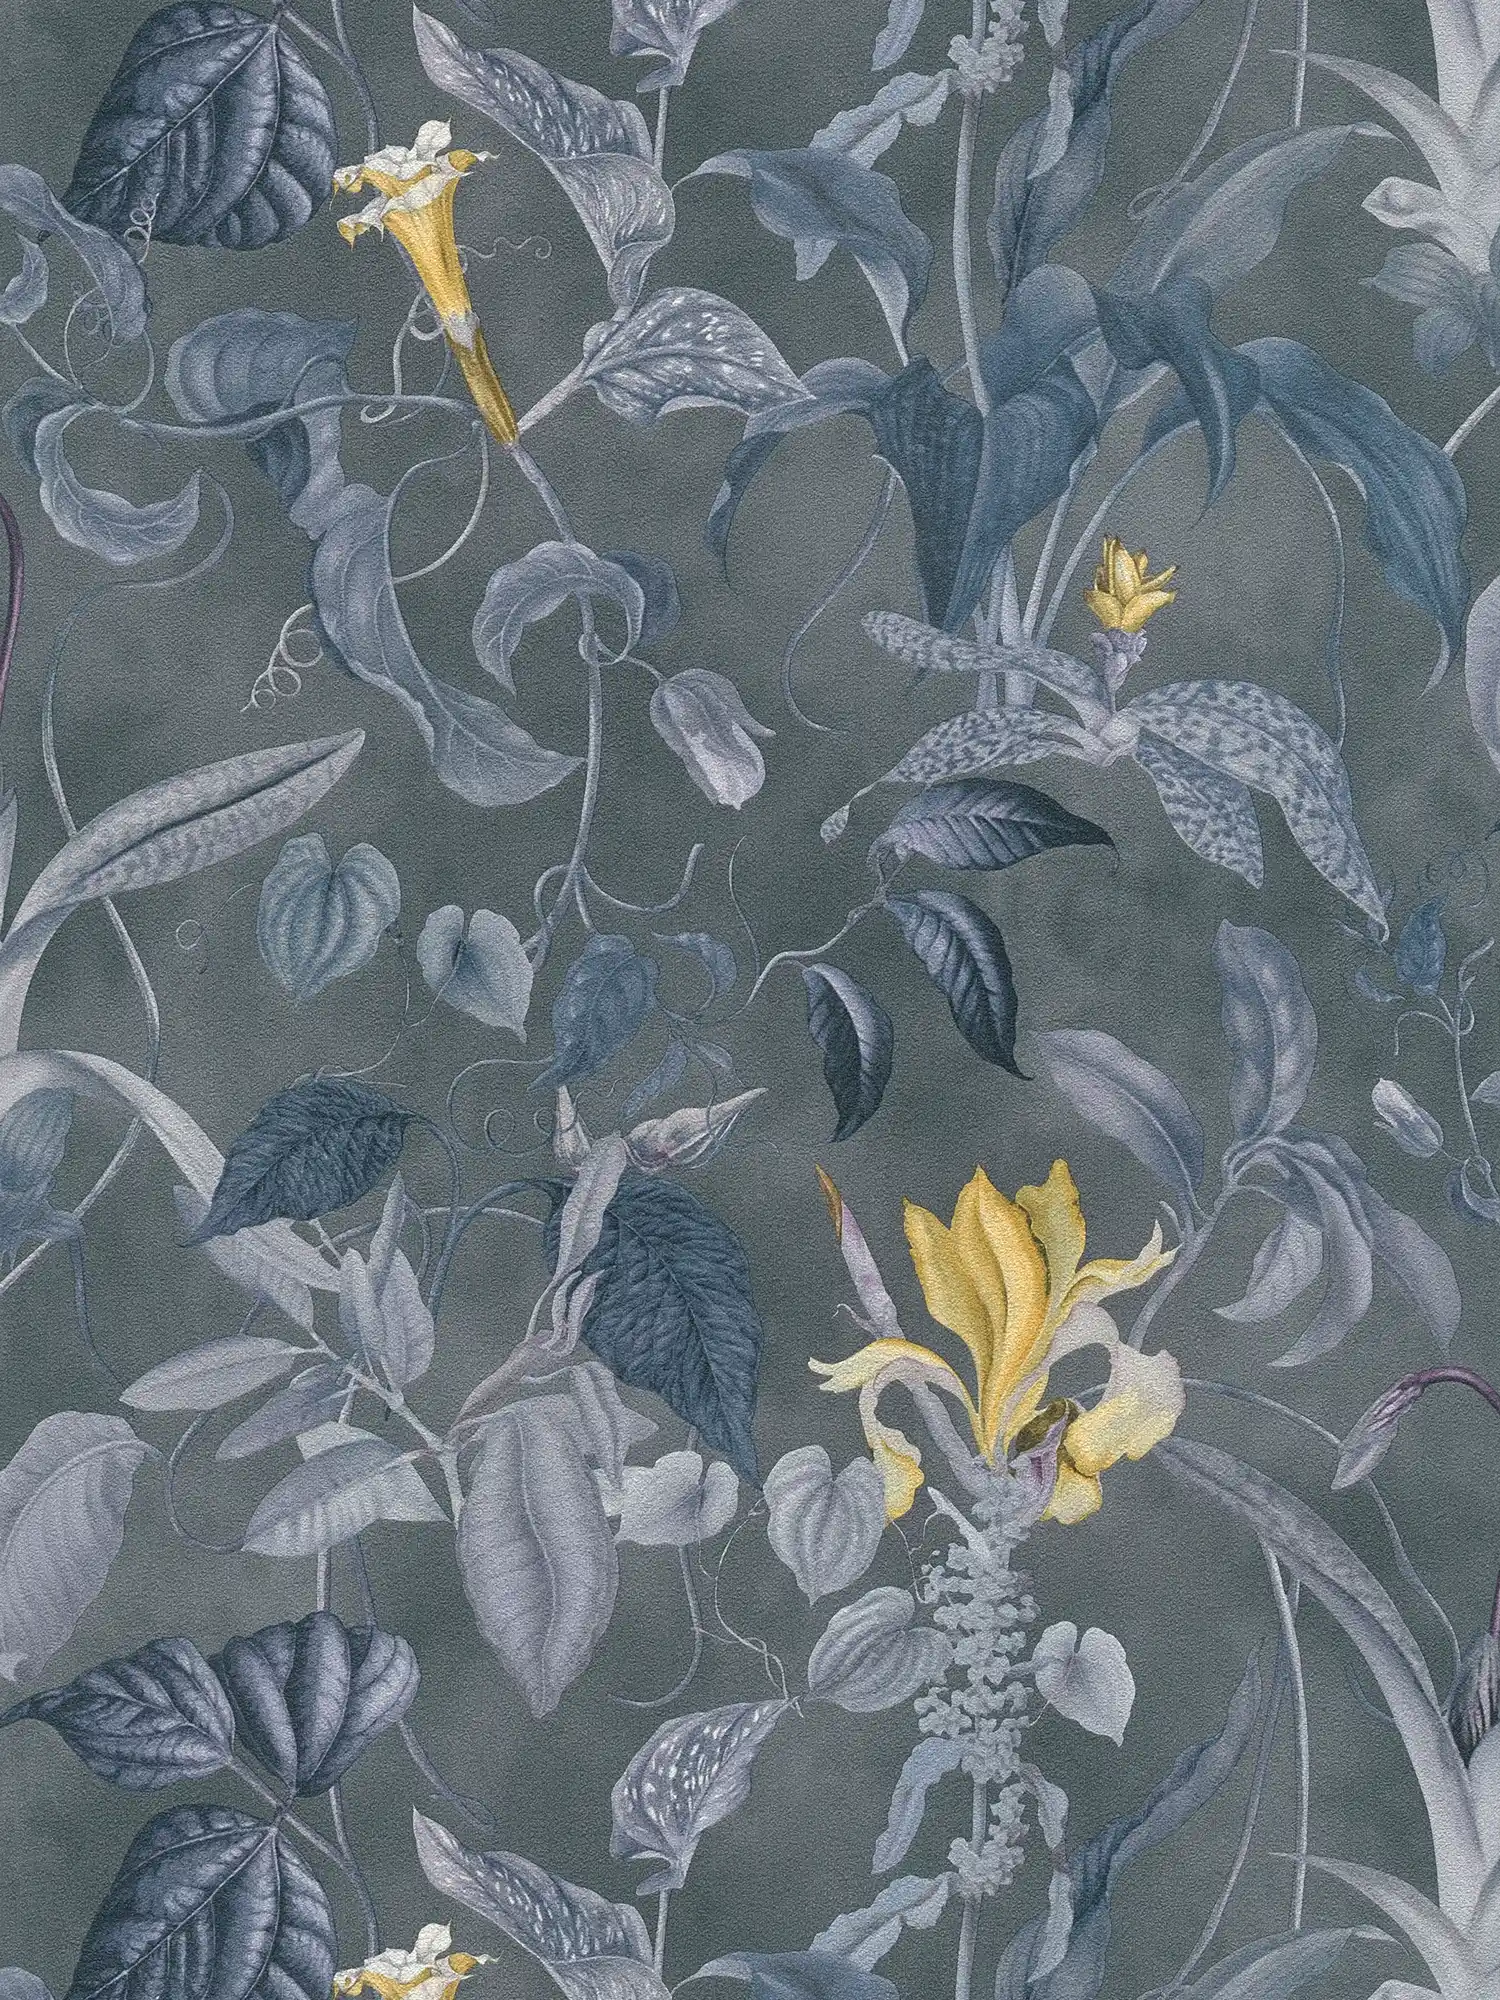 Tropische Blumentapete Grau-Blau, Design by MICHALSKY
